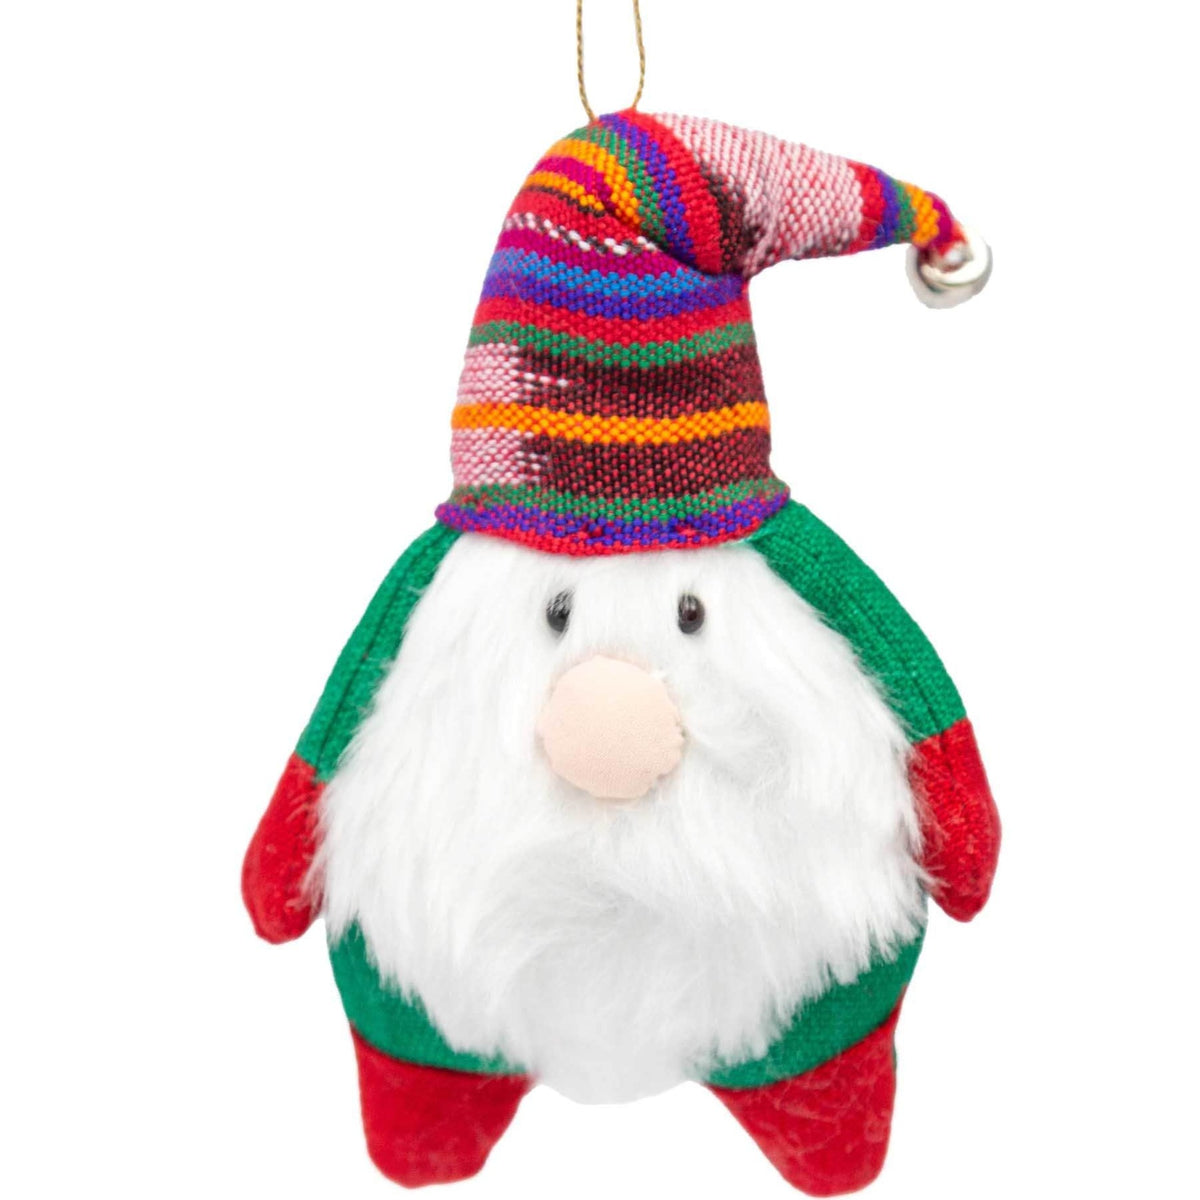 Festive Gnome Ornament